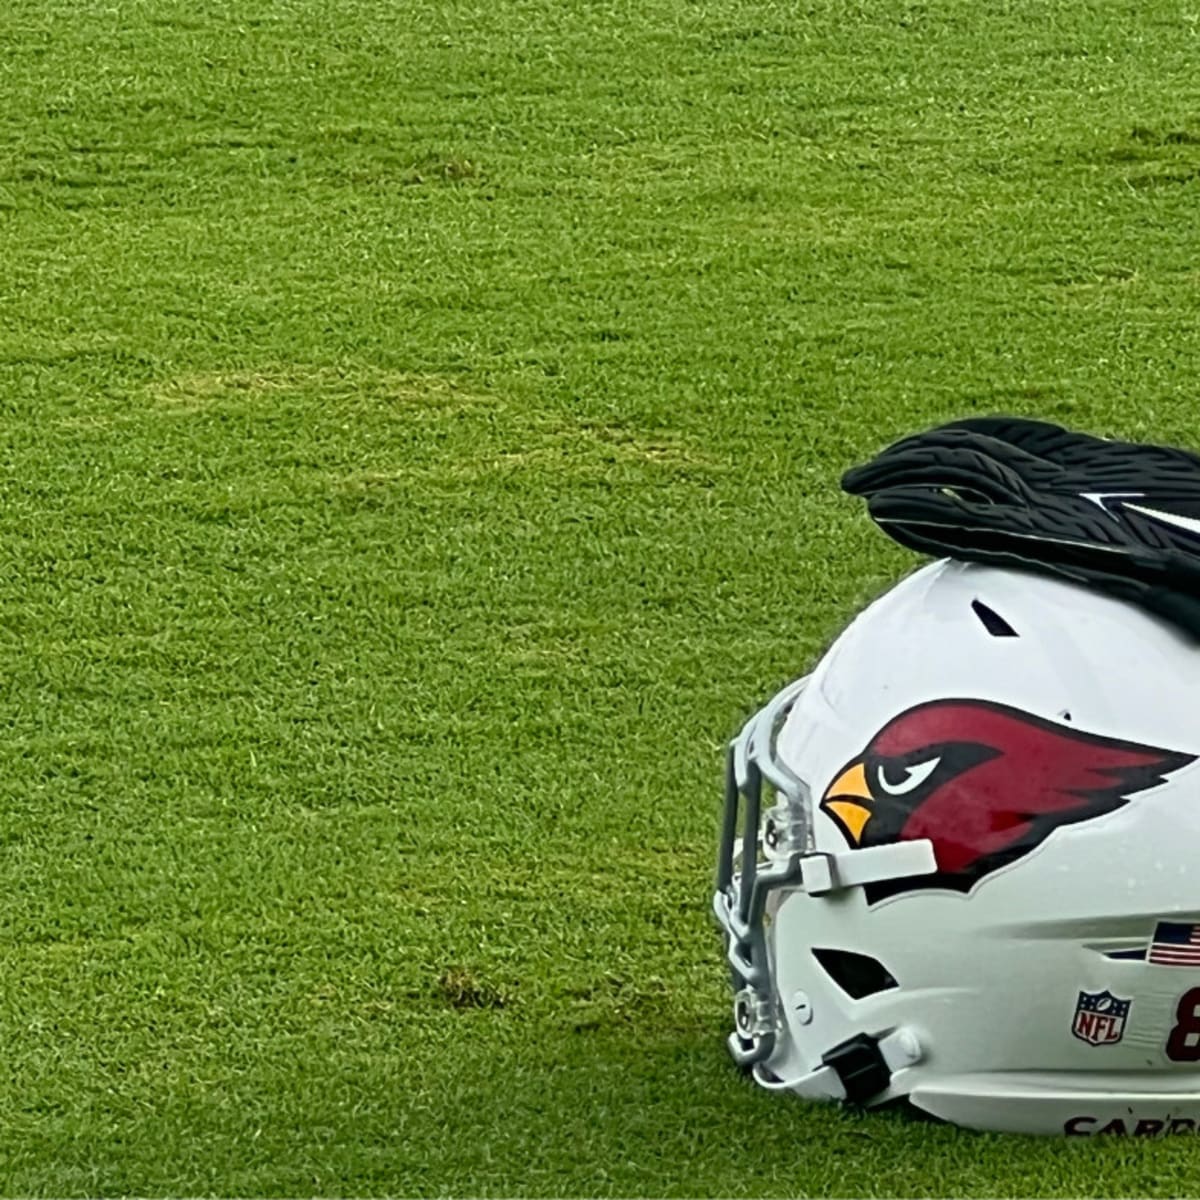 An Arizona Cardinals helmet on the grass during Arizona Cardinals